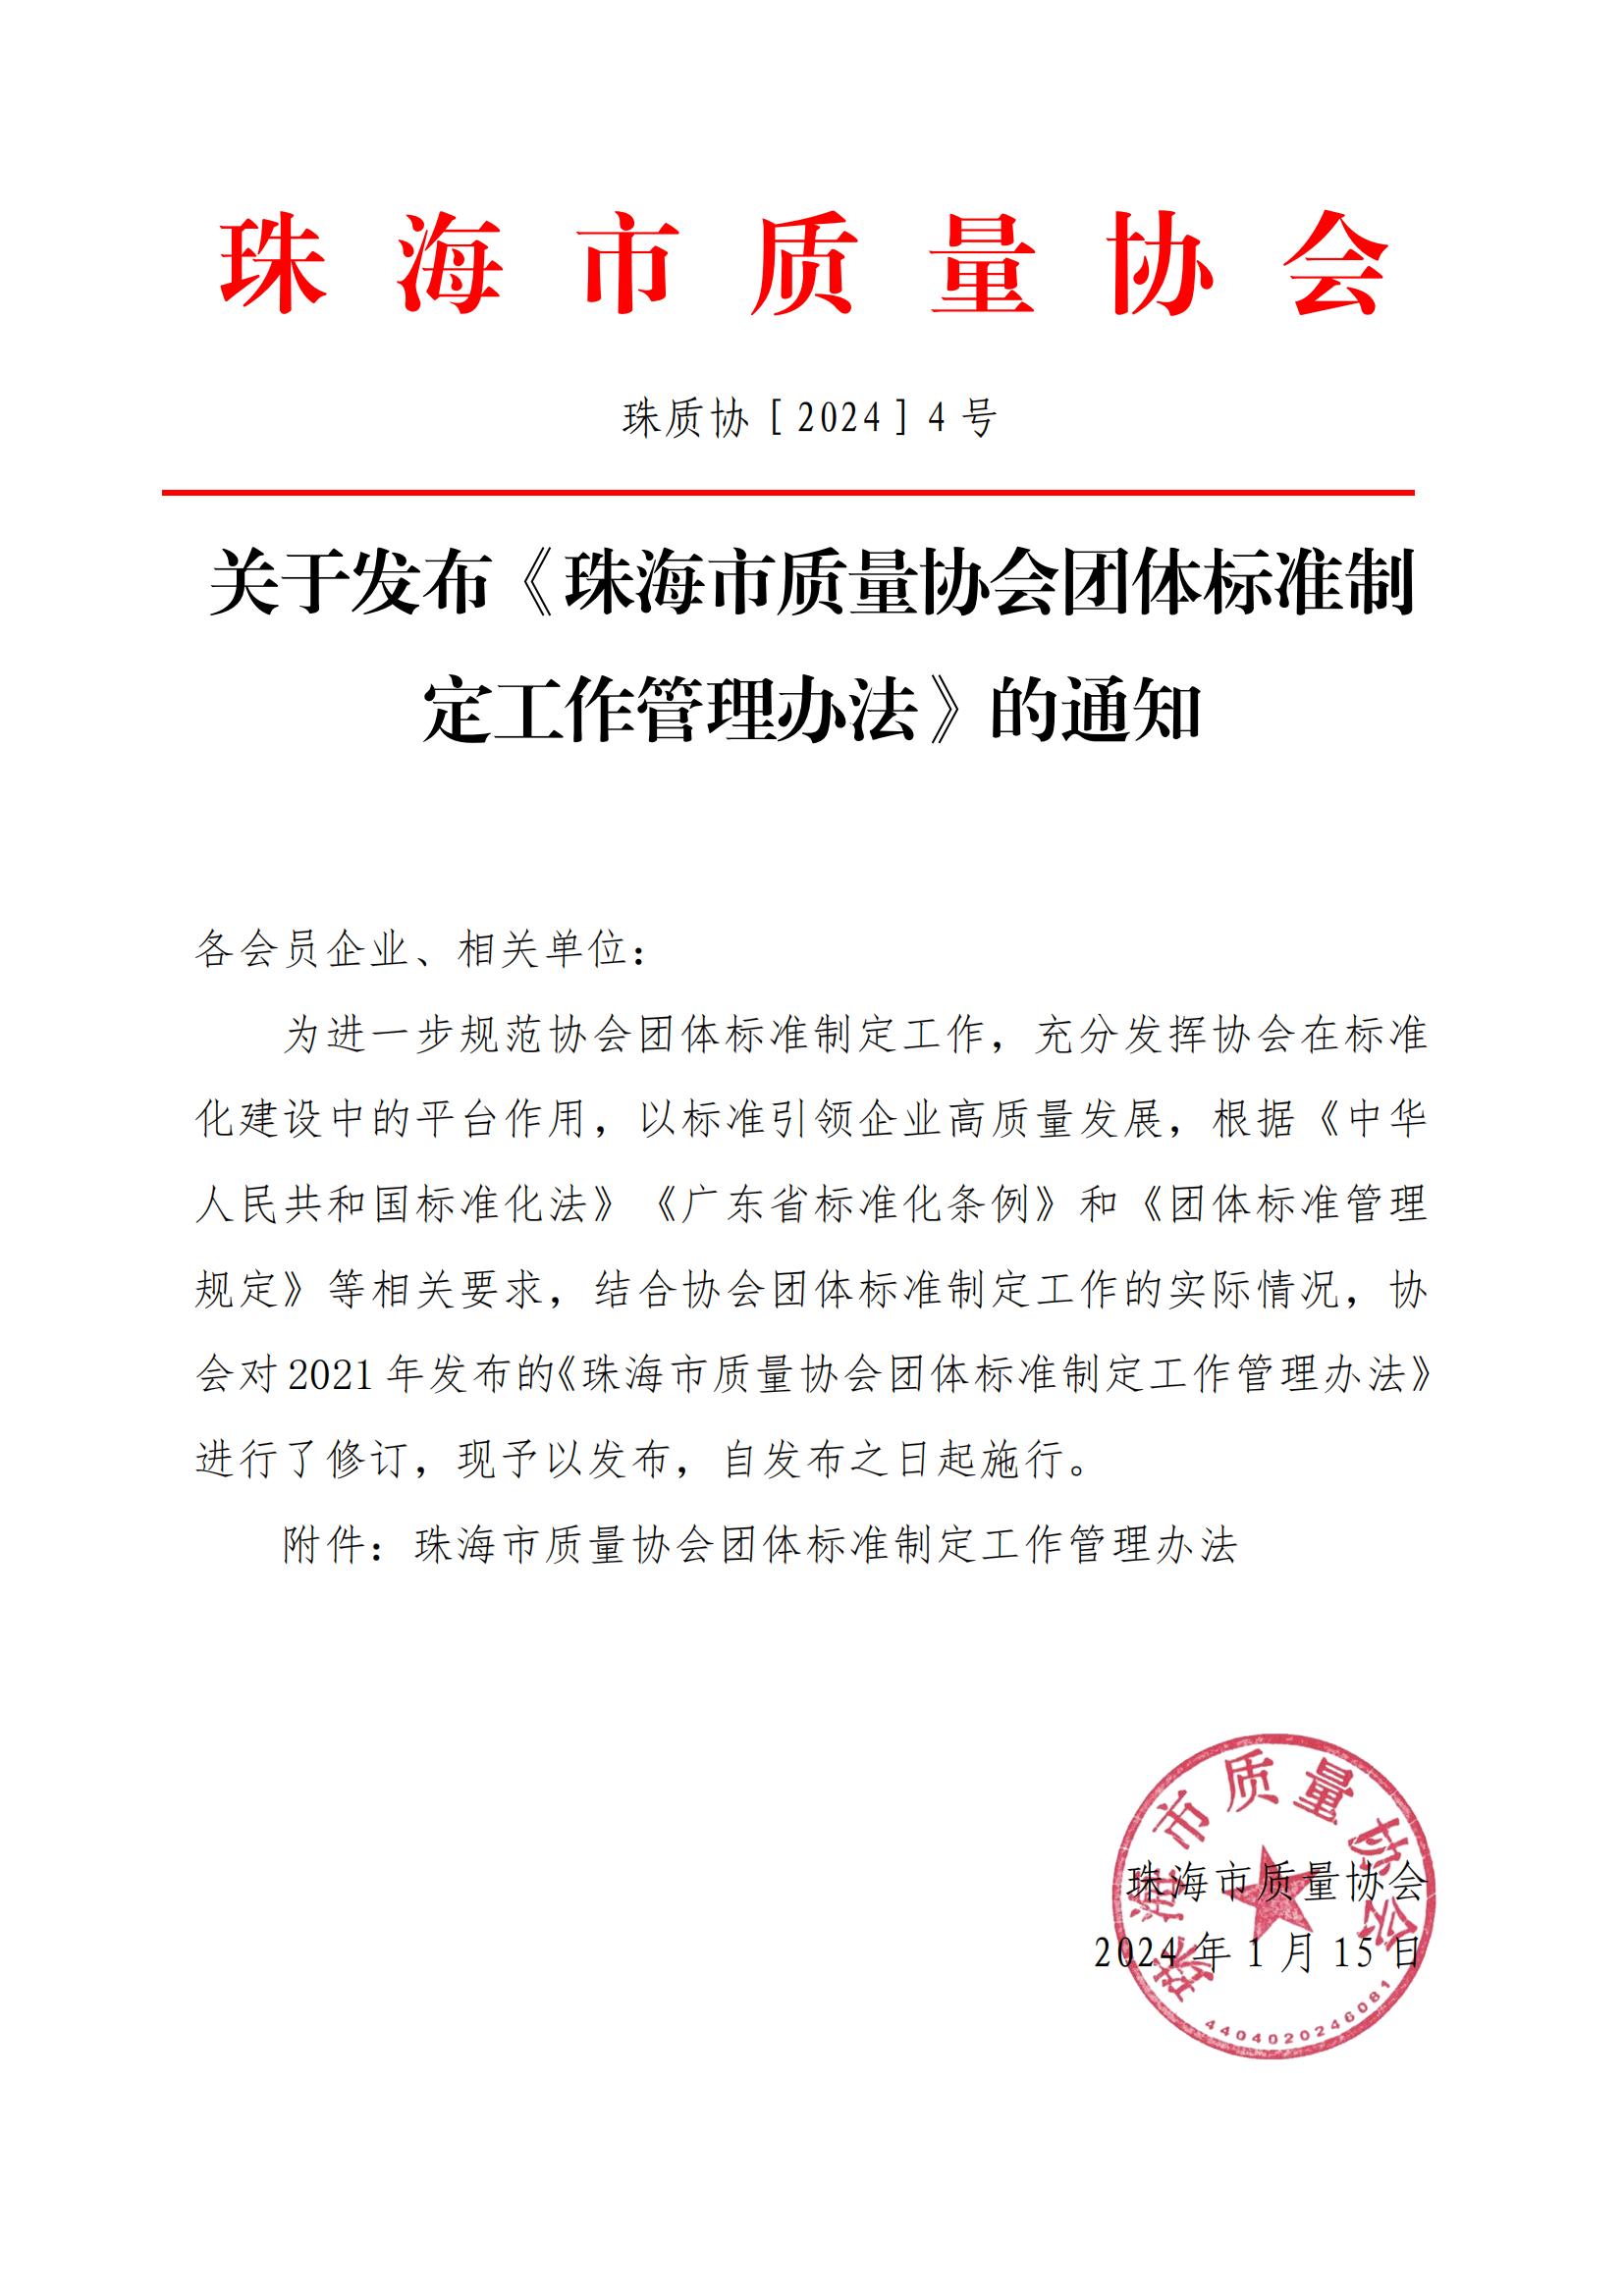 4号文-关于发布《珠海市质量协会团体标准制定工作管理办法》的通知(1)_00.jpg